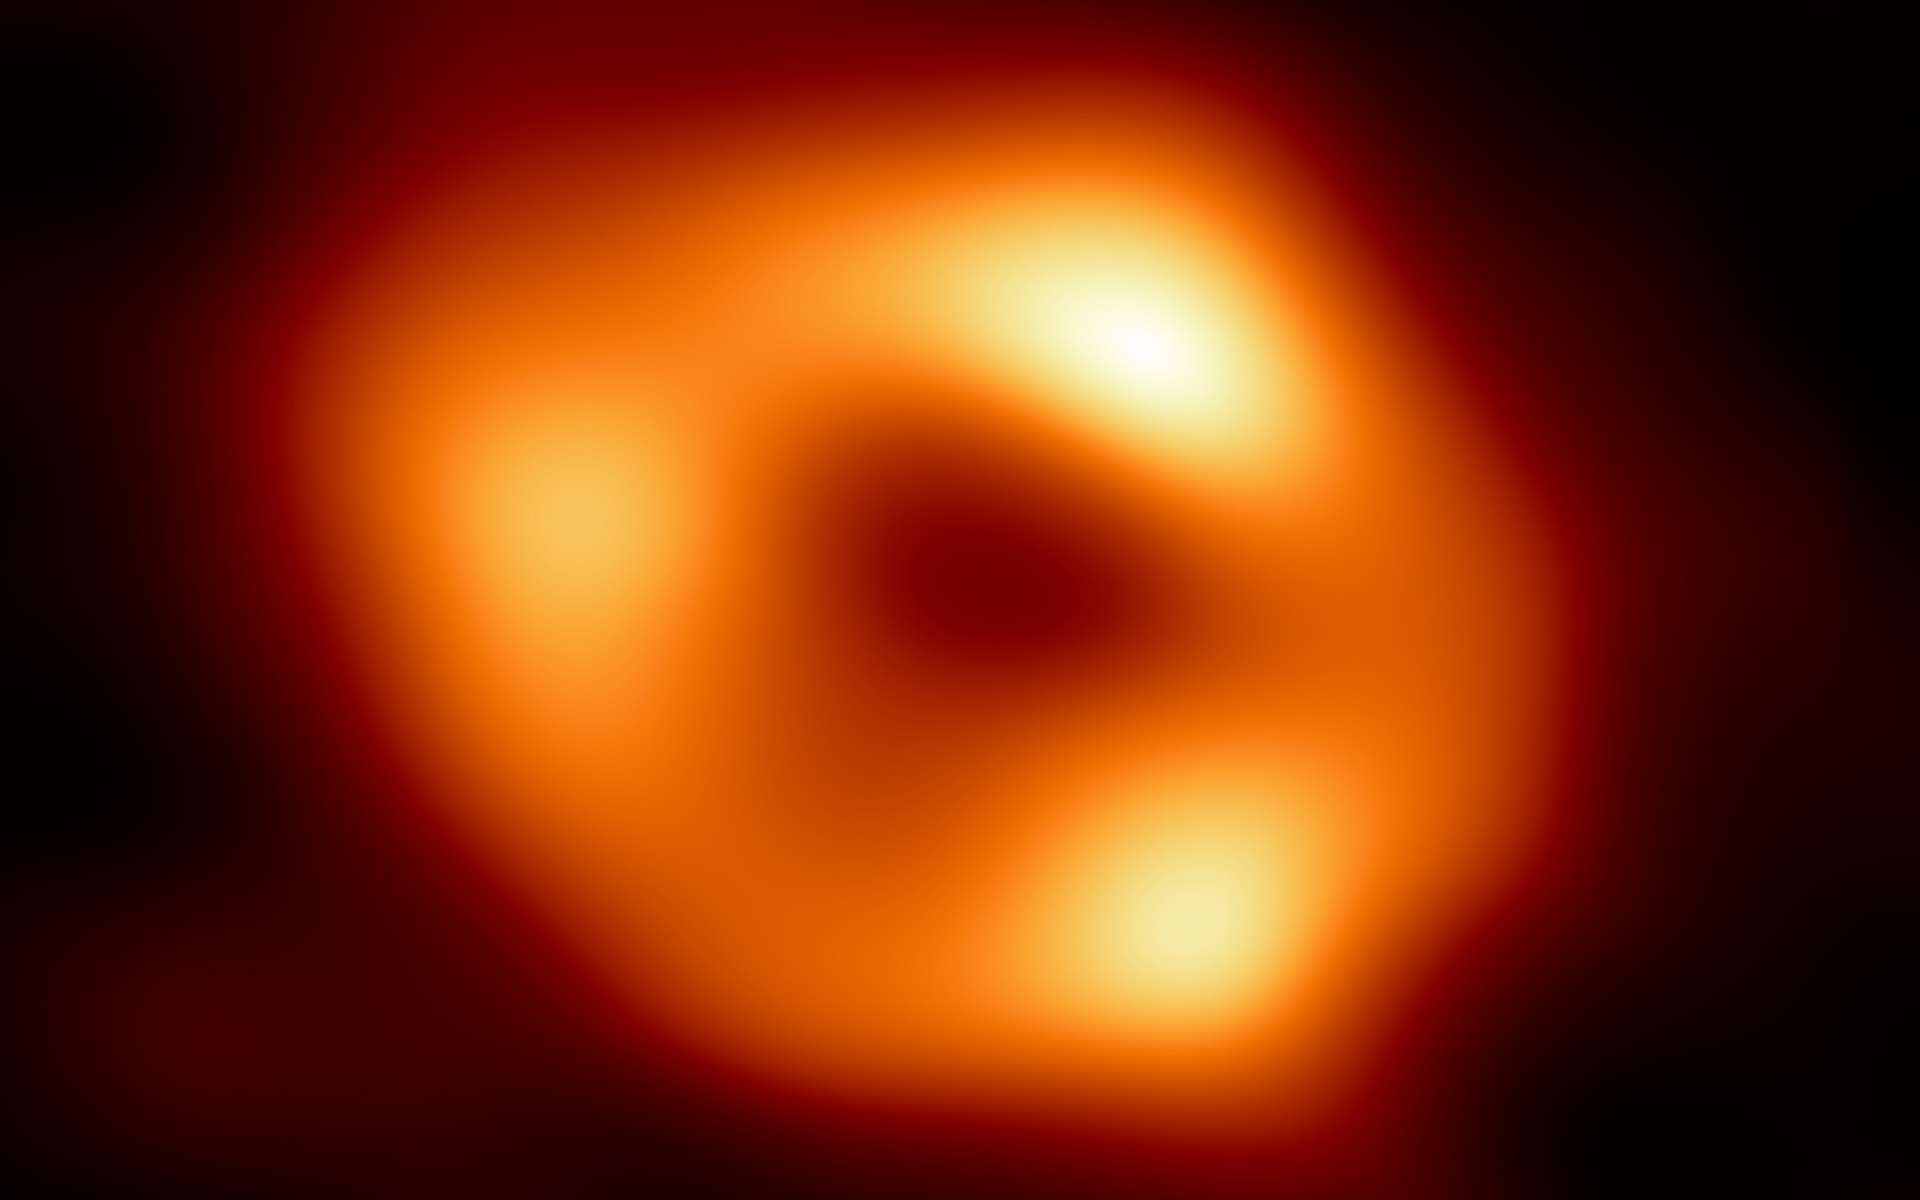 La nouvelle méthode trouvée par les chercheurs s'applique pour les systèmes binaires constitués de deux trous noirs supermassifs. Le trou noir central de la Voie lactée, sur cette image, ne serait pas détectable par cette technique. © Nasa